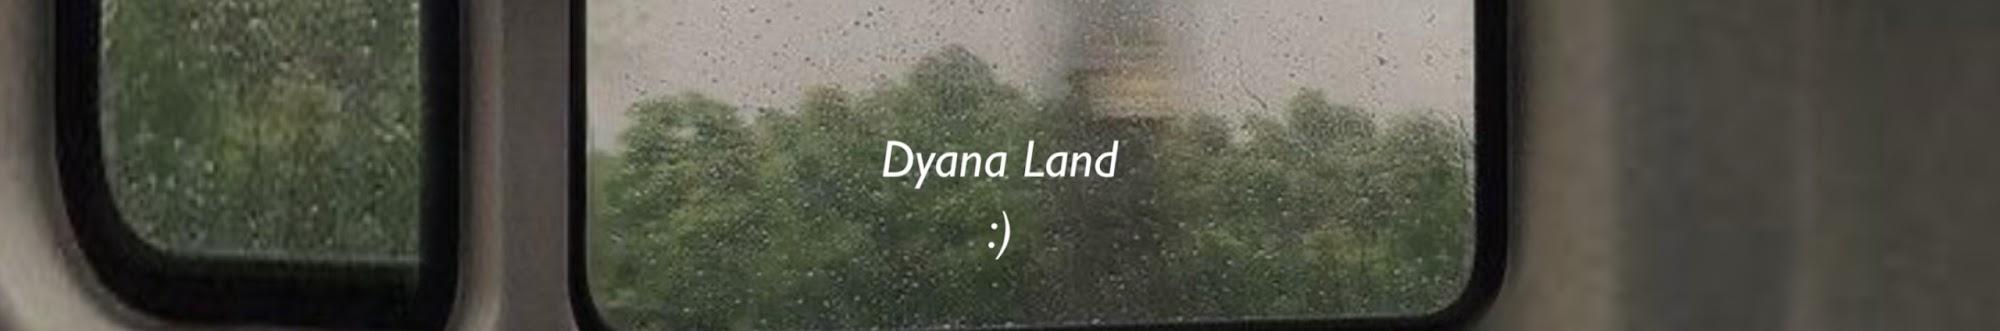 dyana land - ديانا